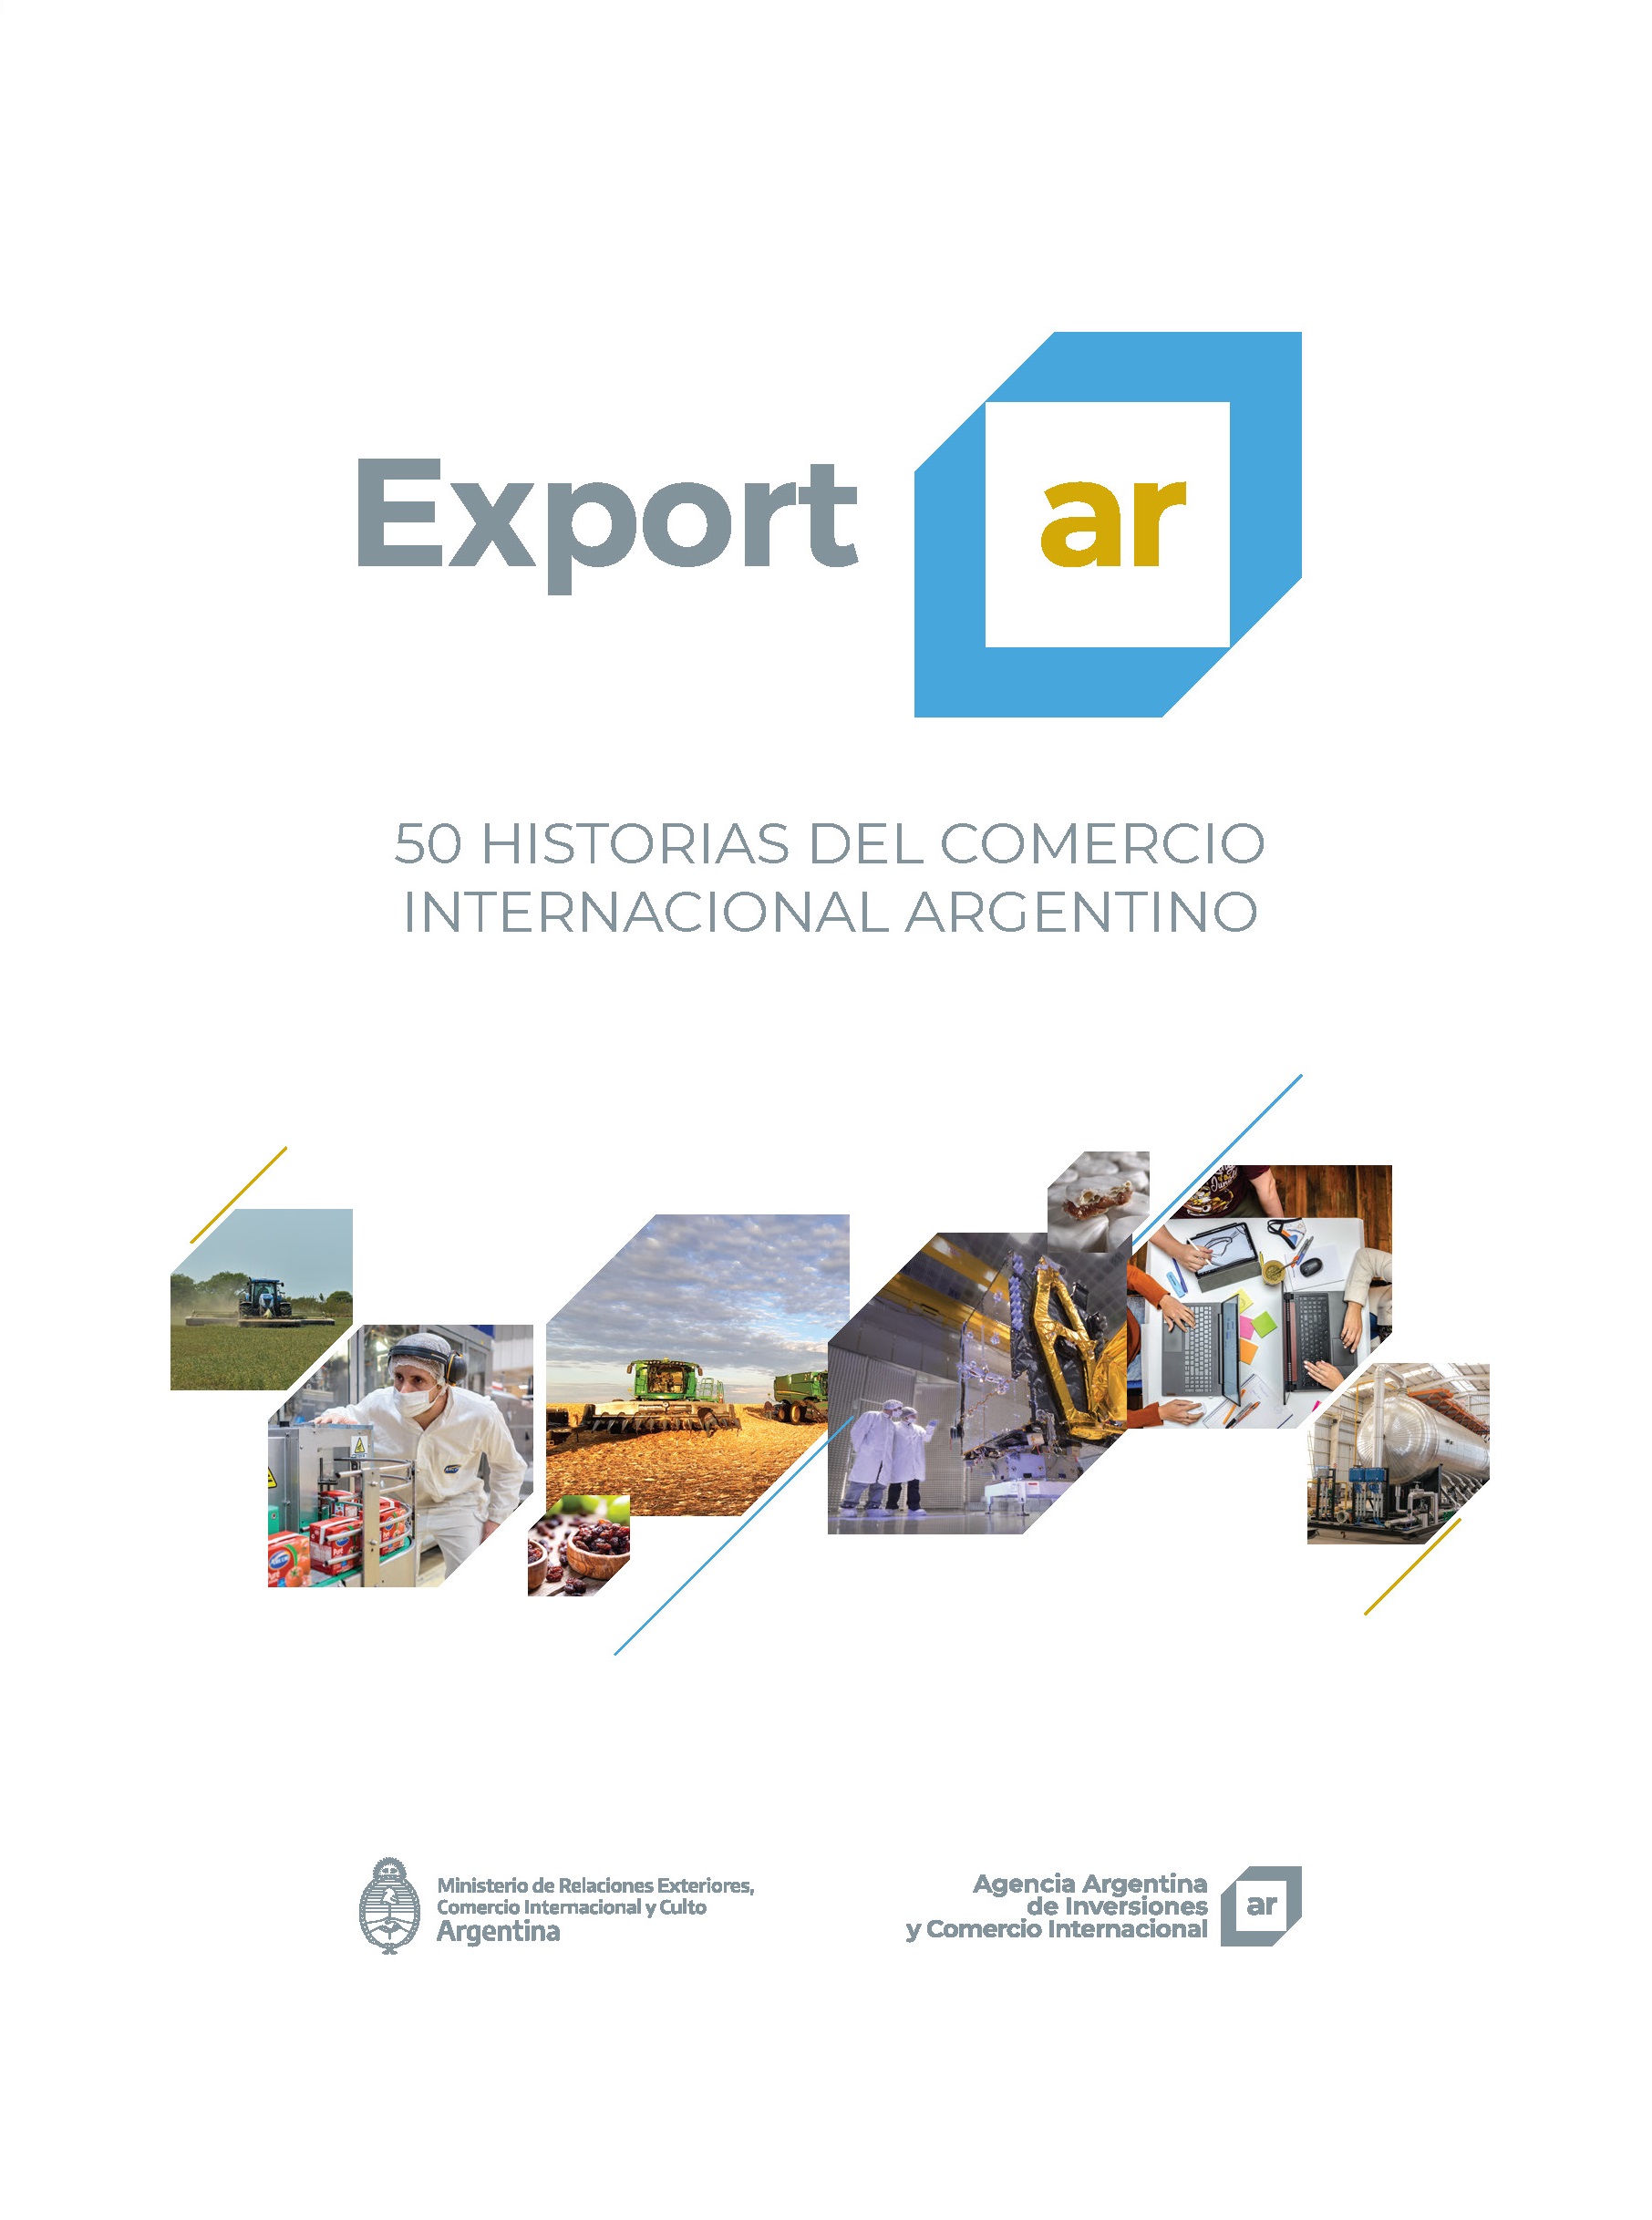 https://inversionycomercio.org.ar/images/publicaciones/Exportar. 50 historias del comercio internacional argentino